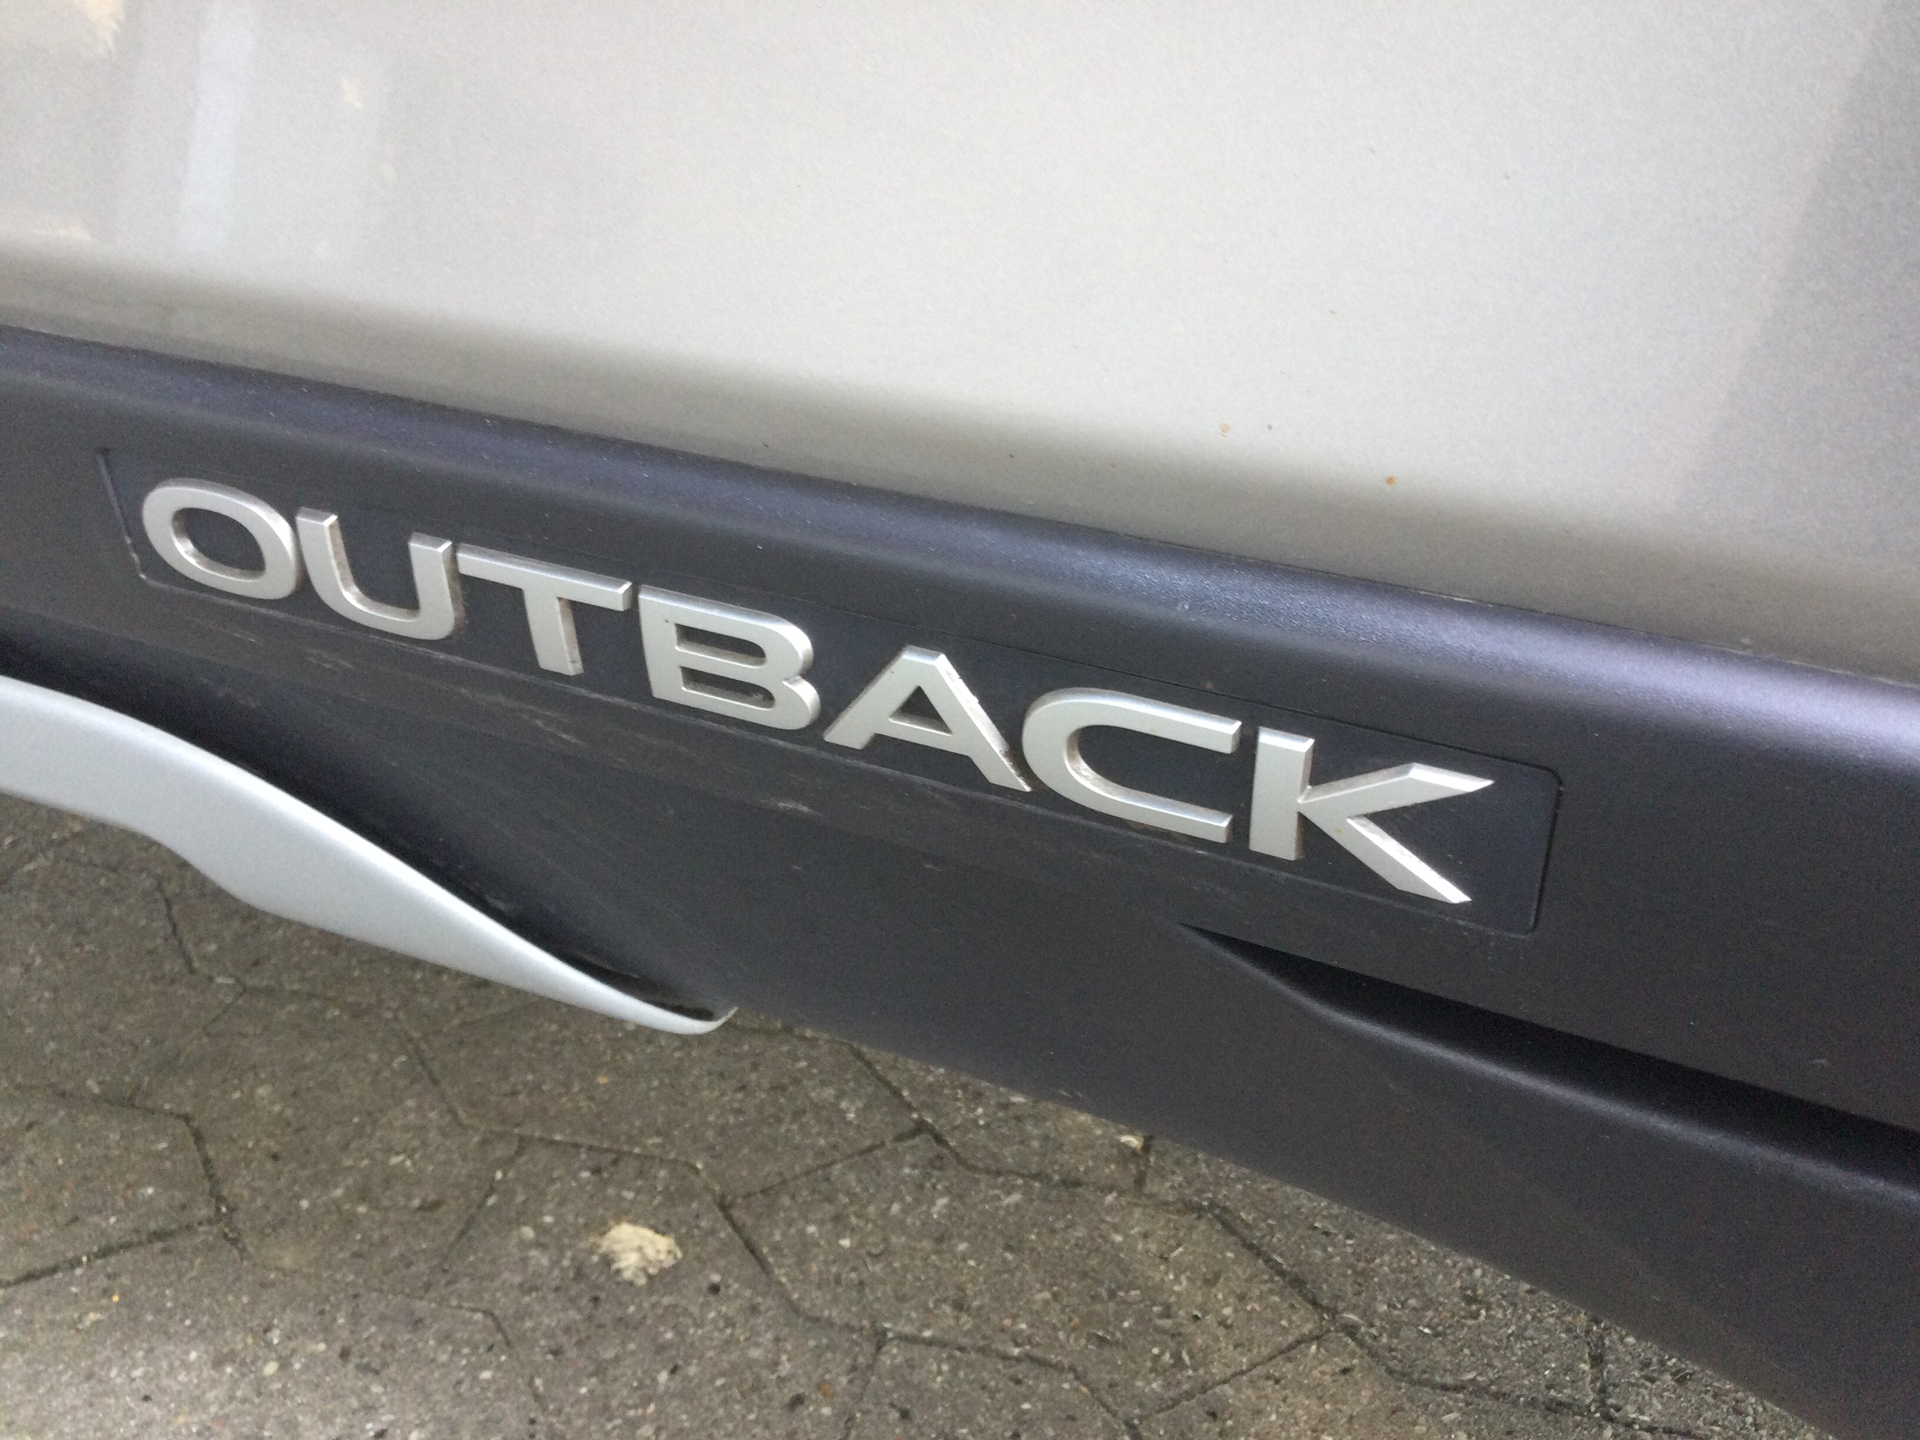 Billede af Subaru Outback 2,0 D Summit AWD CVT 150HK Van 7g Aut.